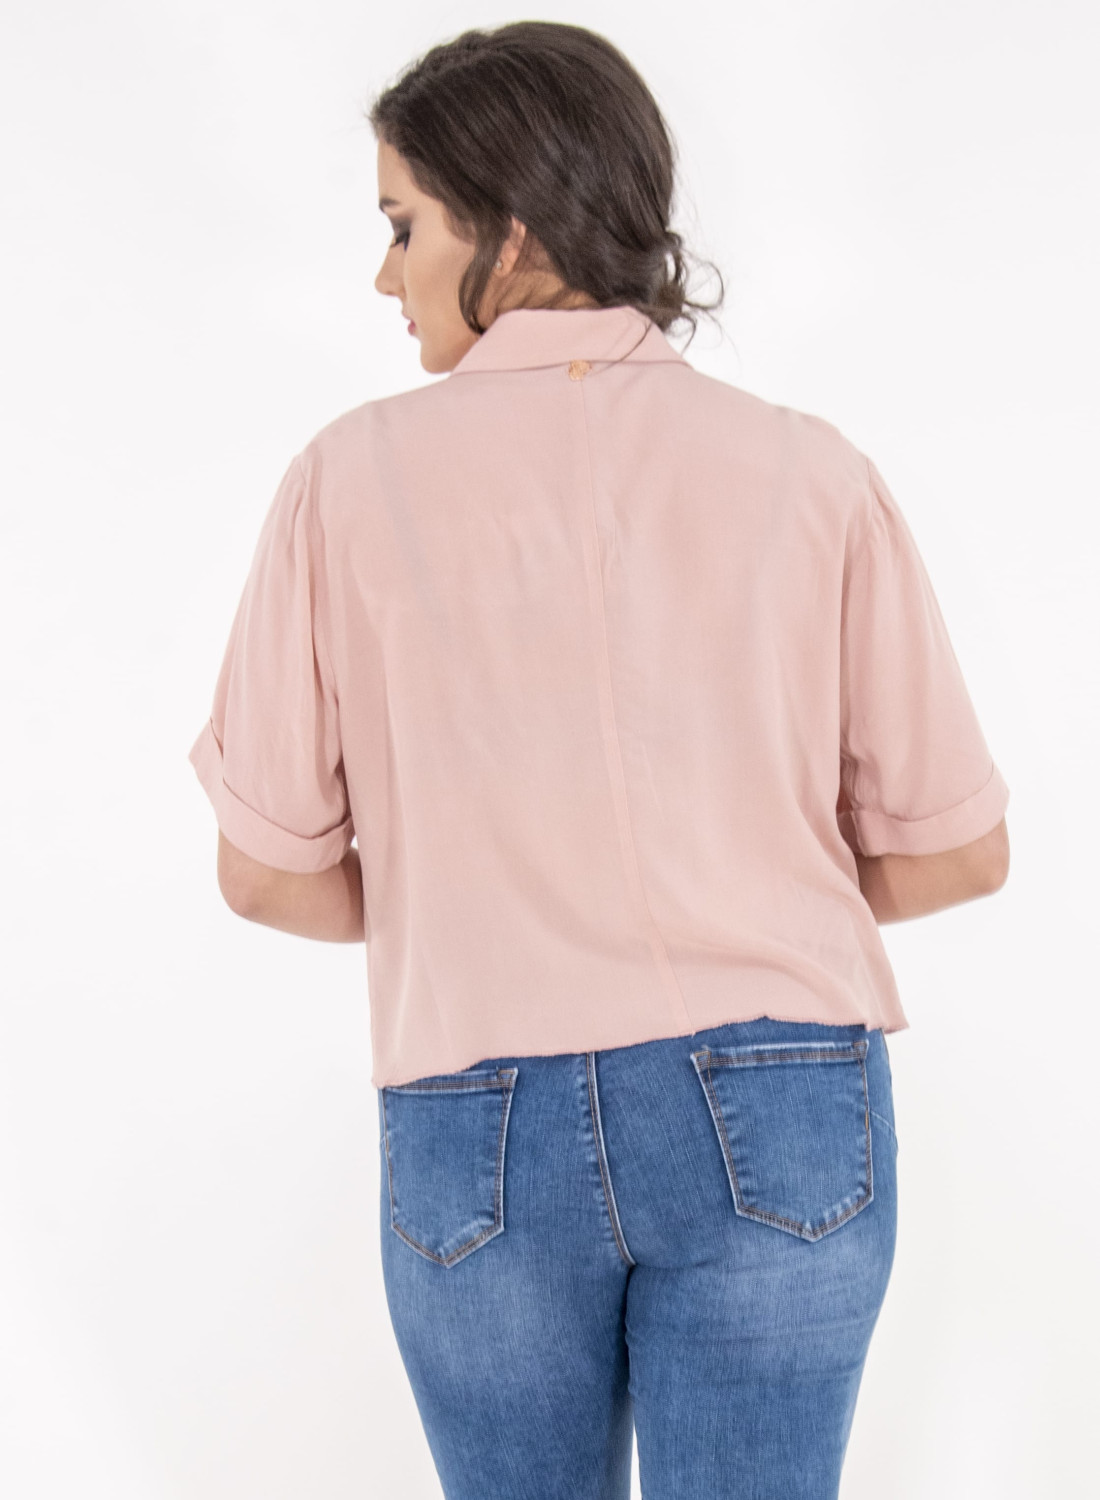 Ροζ κοντό πουκάμισο με φιόγκο